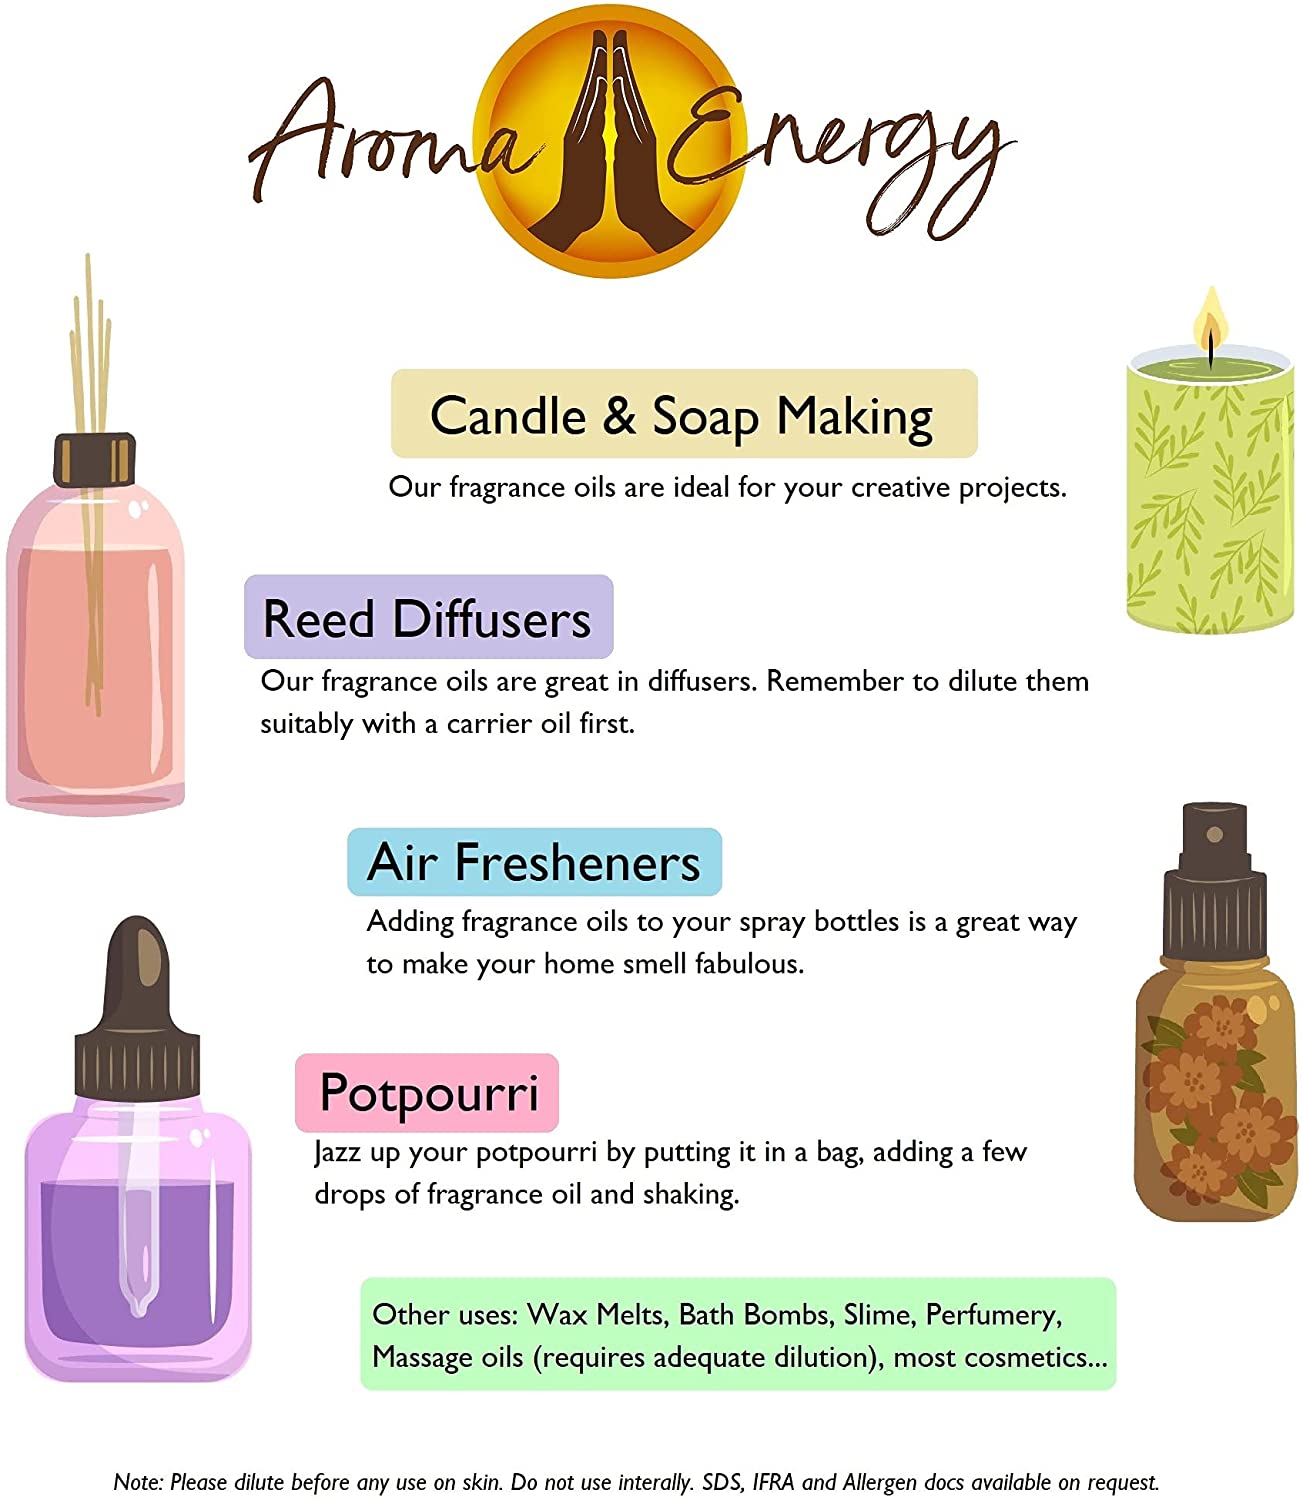 Mandarin Fragrance Oil - Aroma Energy